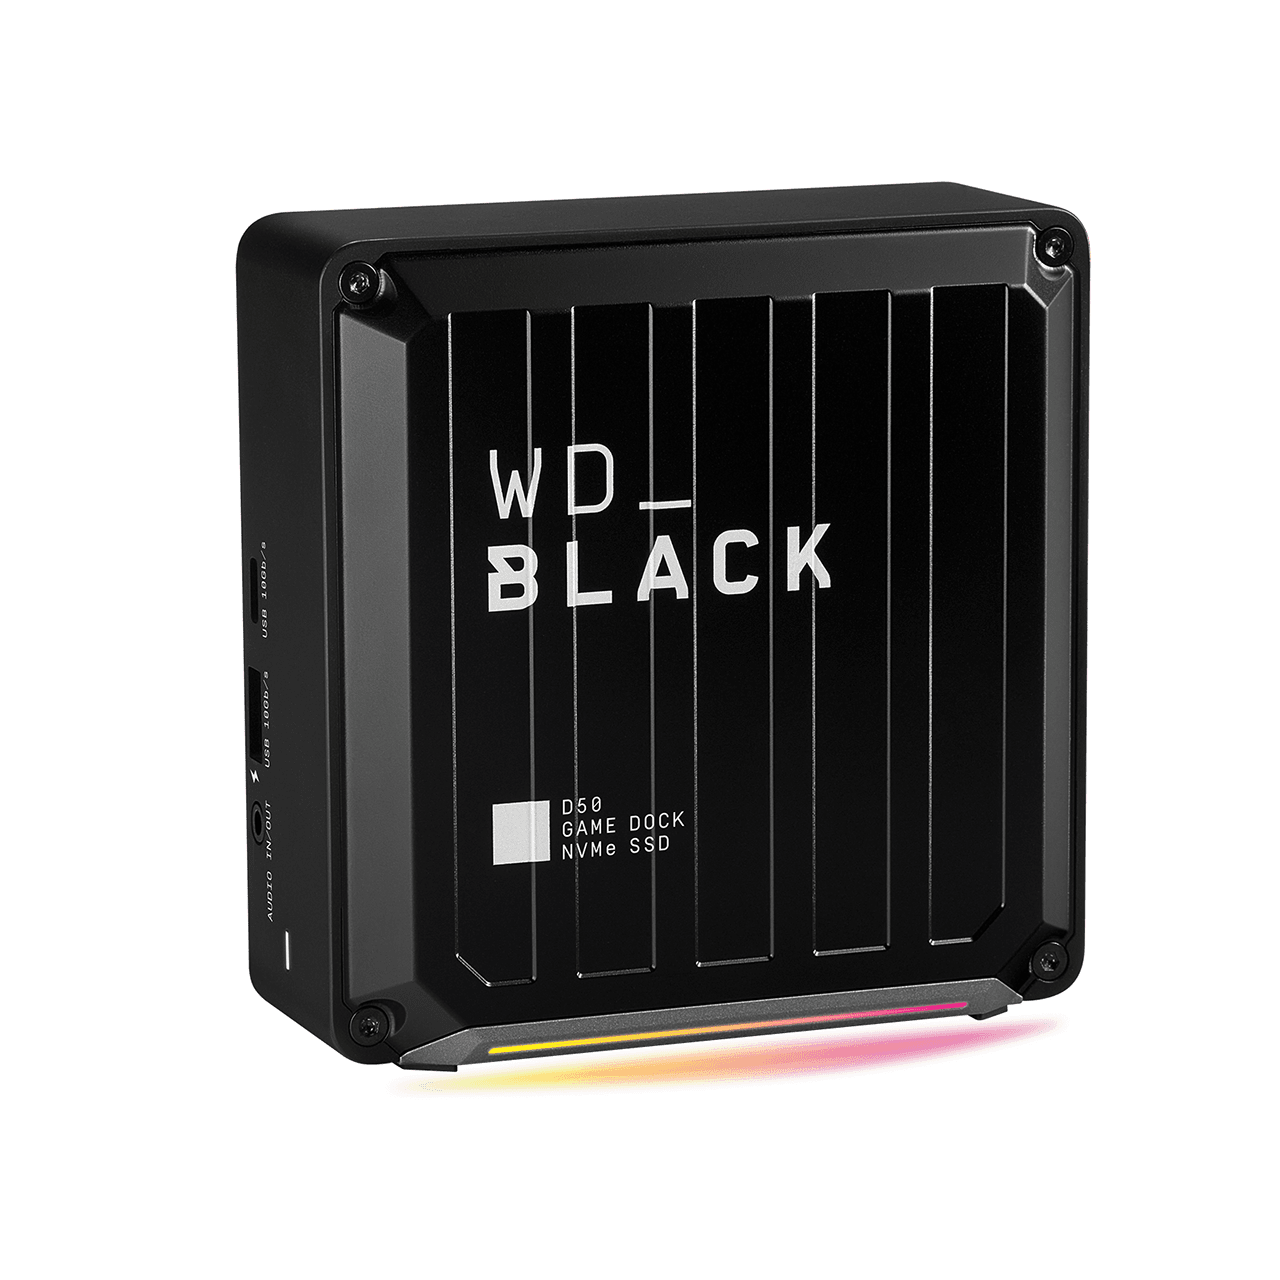 WD Black D50 Game dock